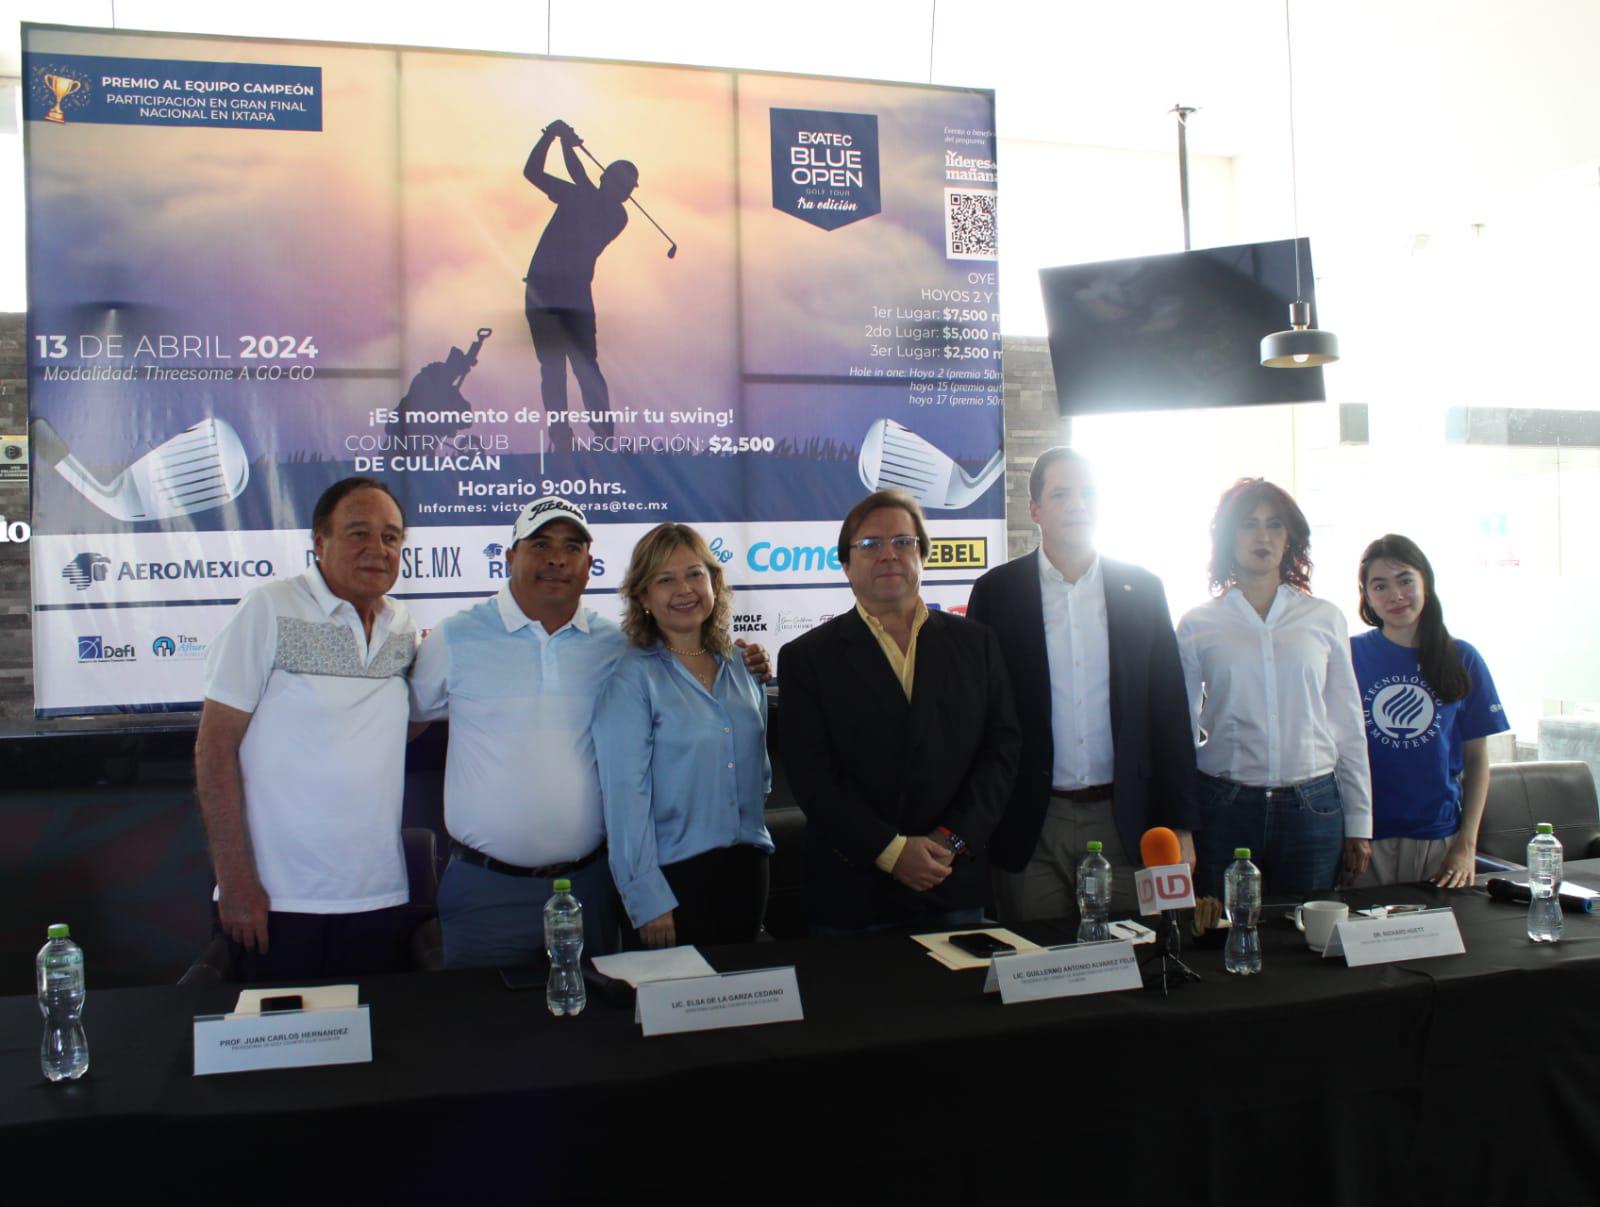 $!Invita Country Club de Culiacán a torneo a beneficio de los líderes del mañana